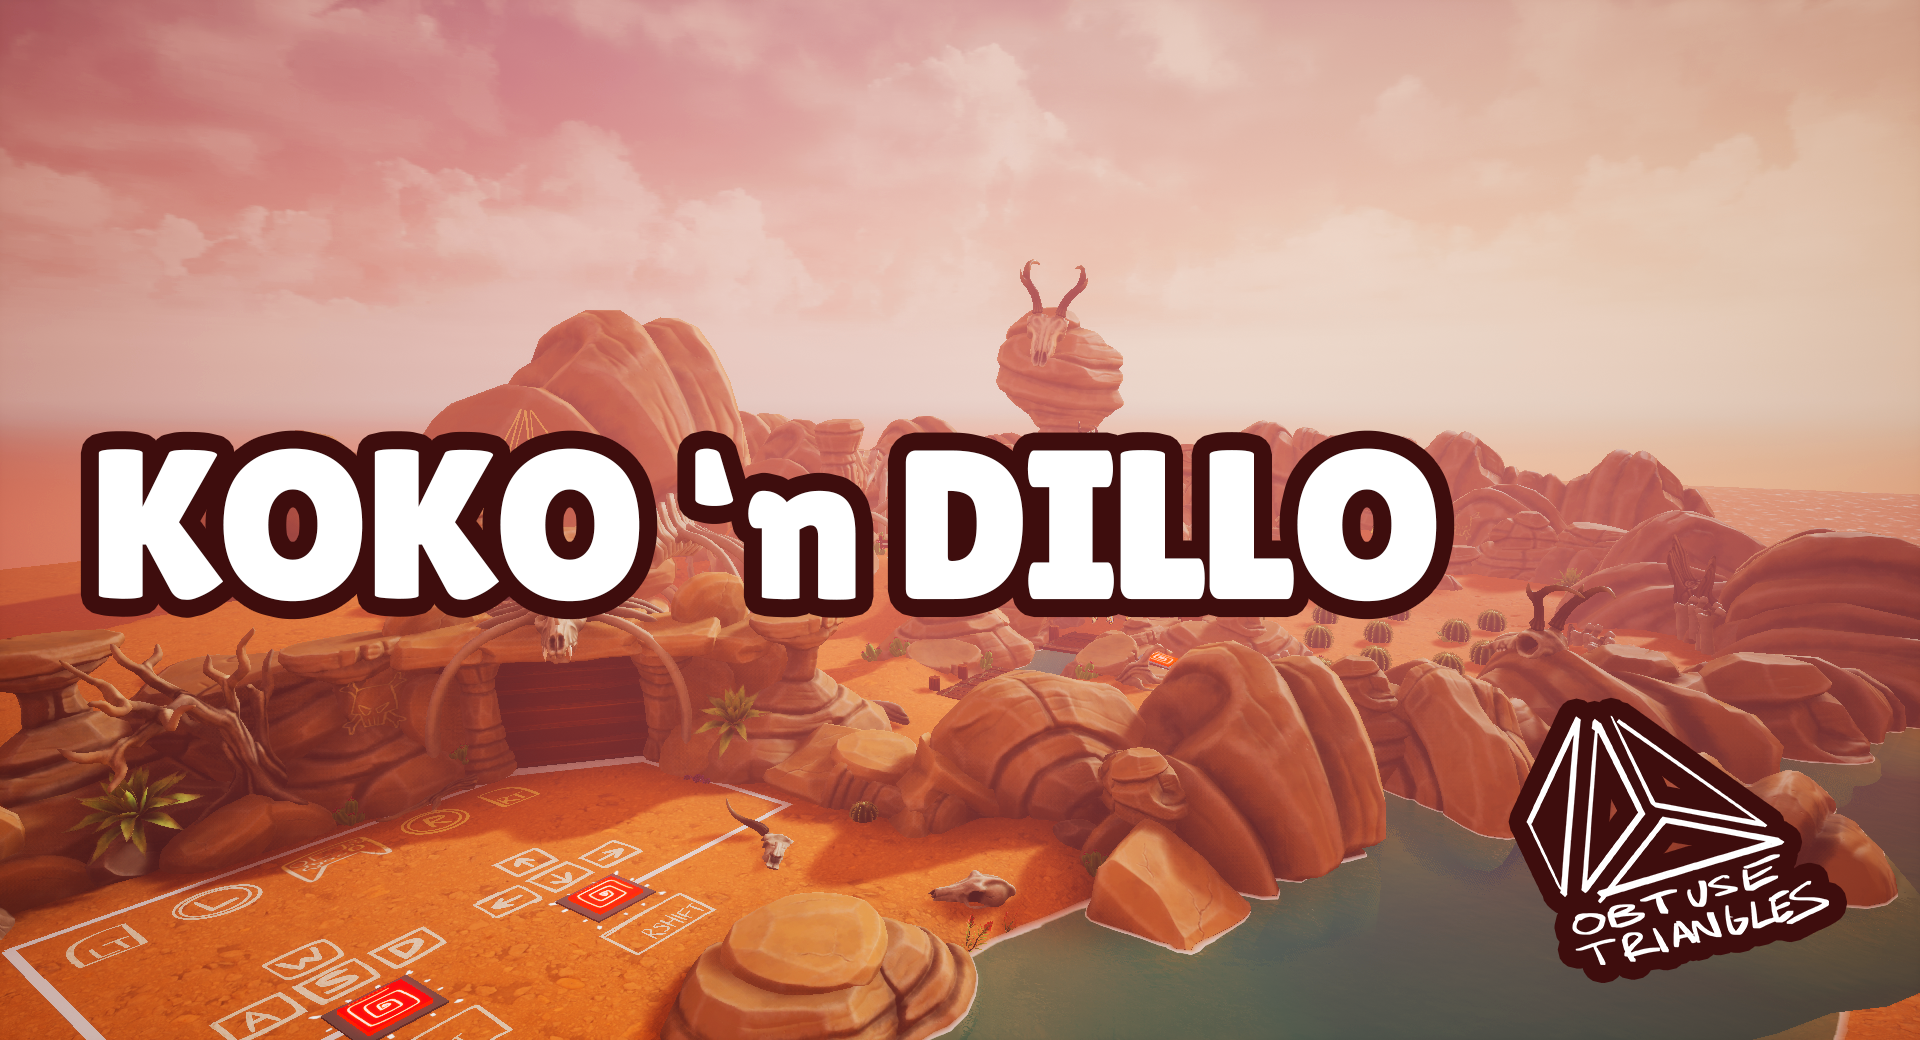 Koko 'n Dillo